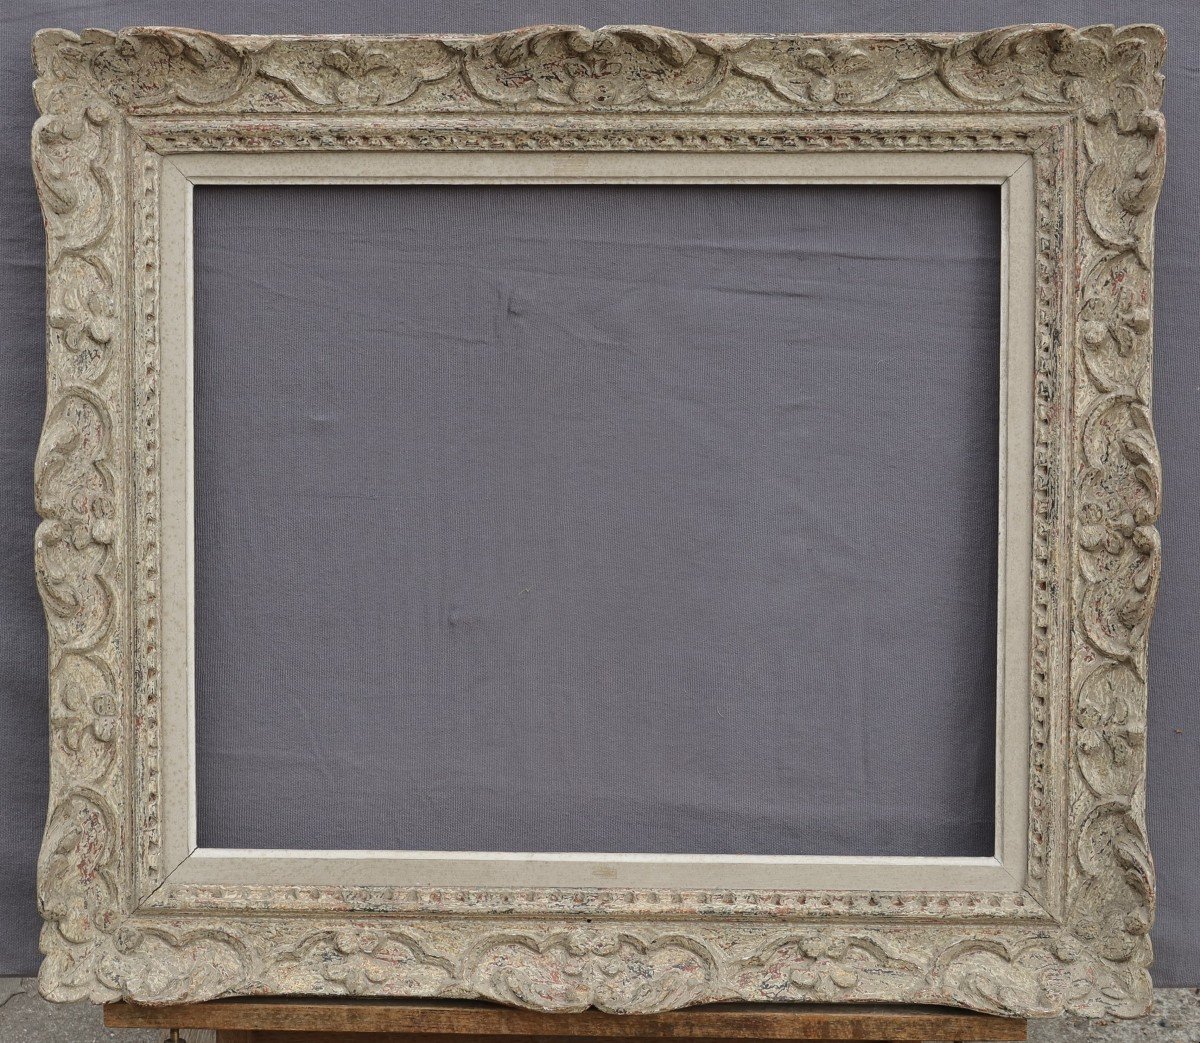 Montparnasse Frame For 10f Format (55x46cm). View 53.5x44.5 Cm